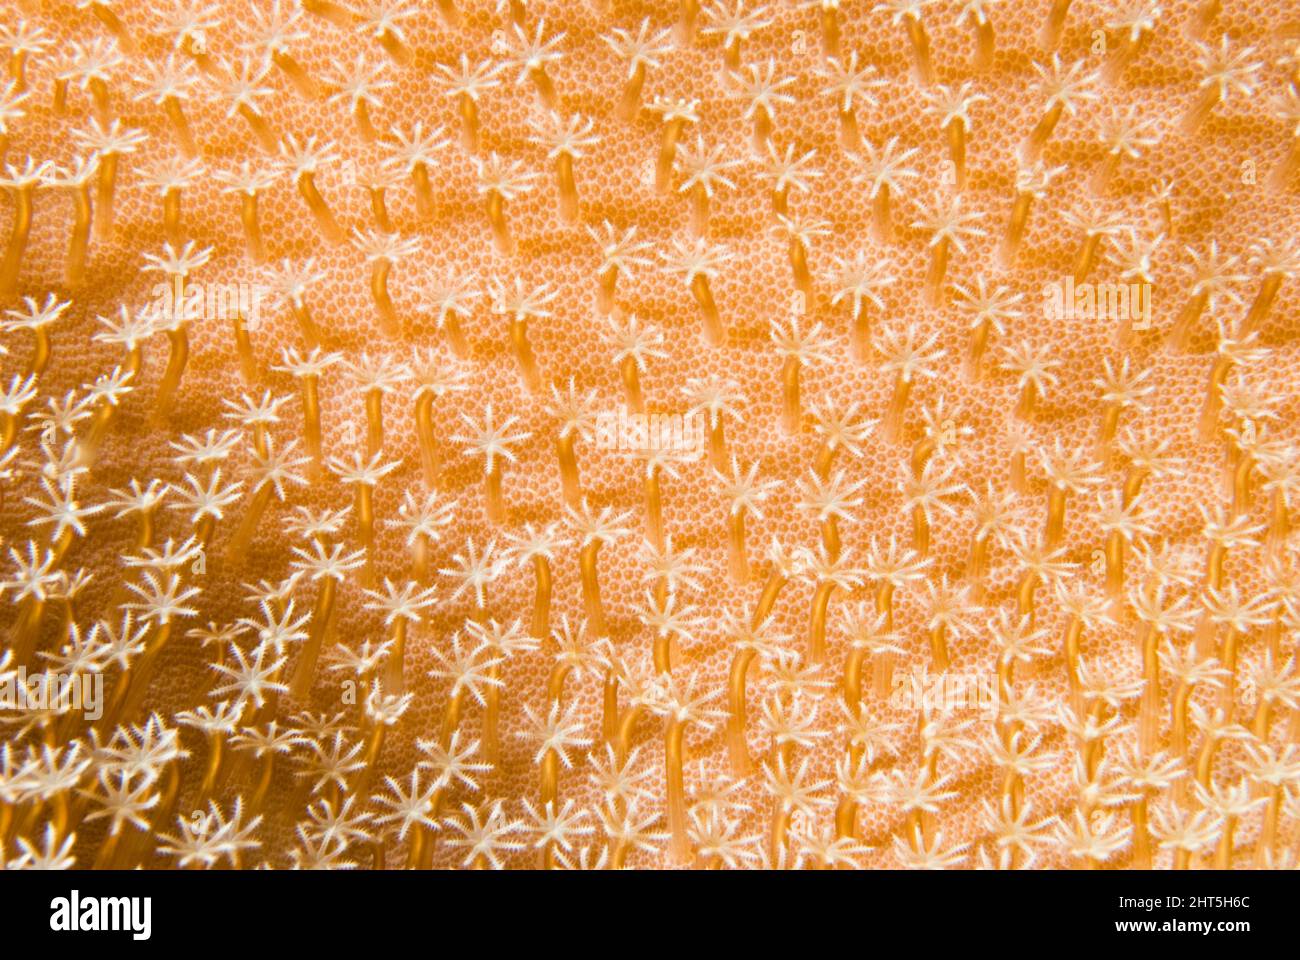 Corallo di pelle. Dettaglio dei polipi. Un corallo di pelle è un ottocorale e i polipi hanno tutti otto tentacoli visti qui. Quando disturbati, i polipi Foto Stock